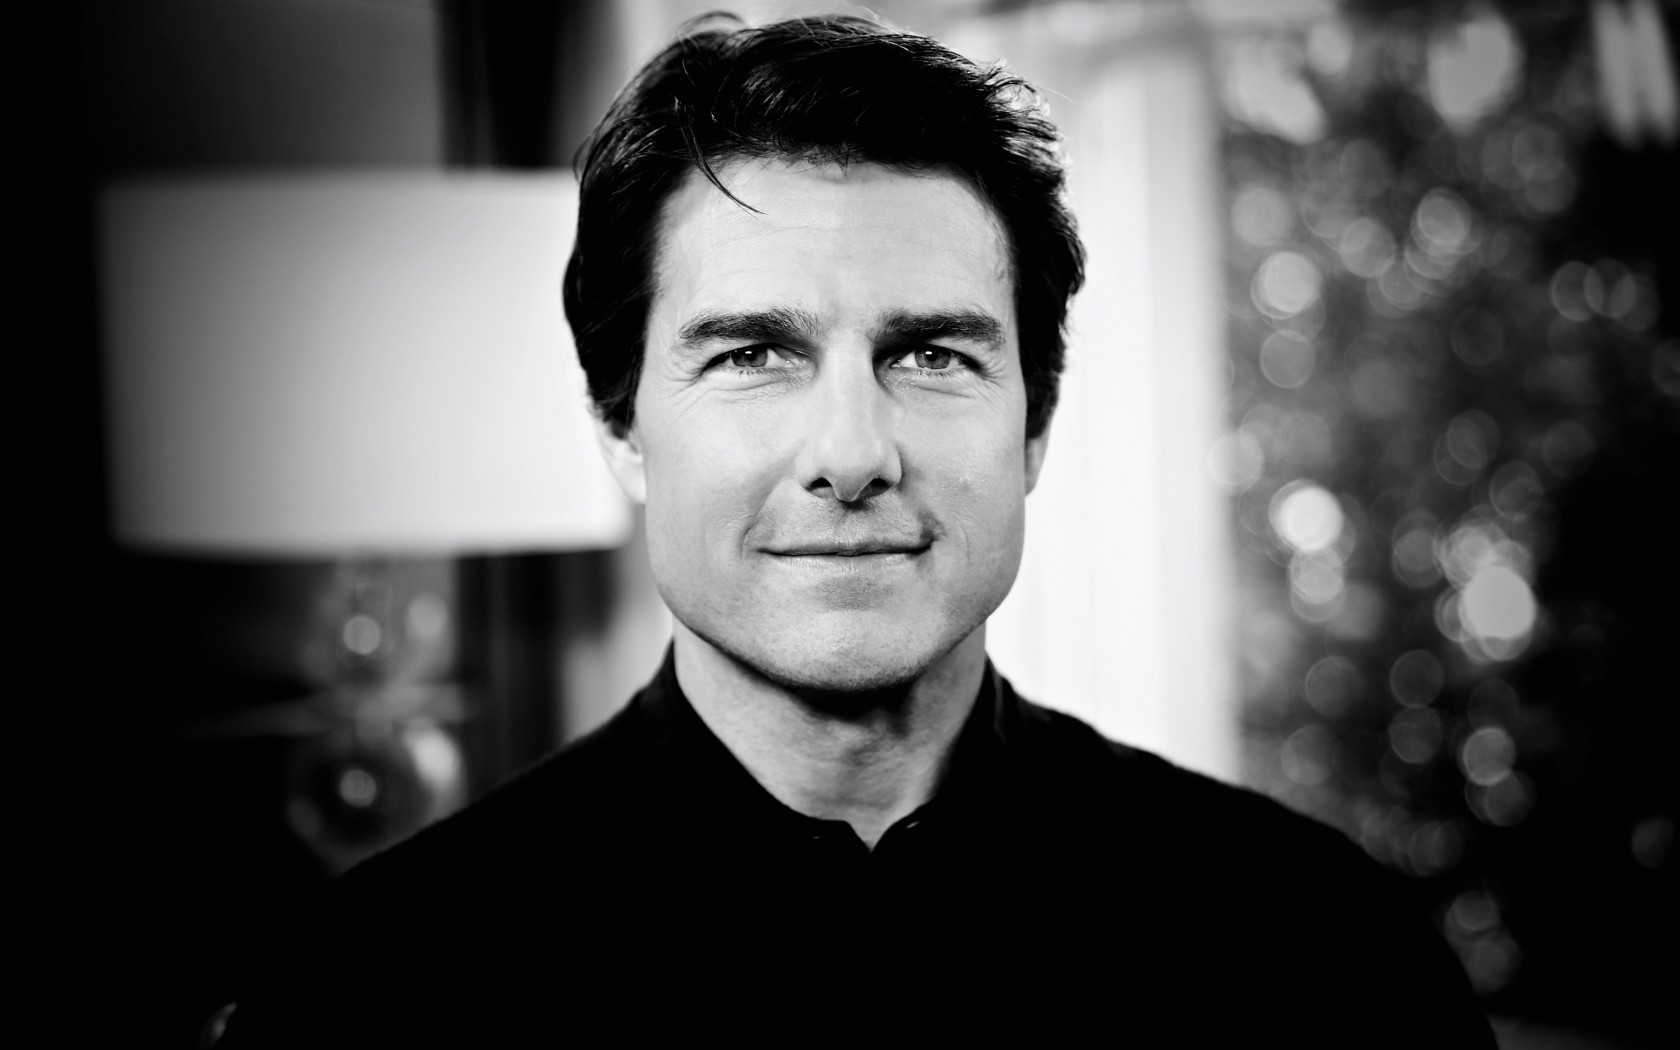 Tom Cruise Black & White Portrait Wallpaper for Desktop 1680x1050